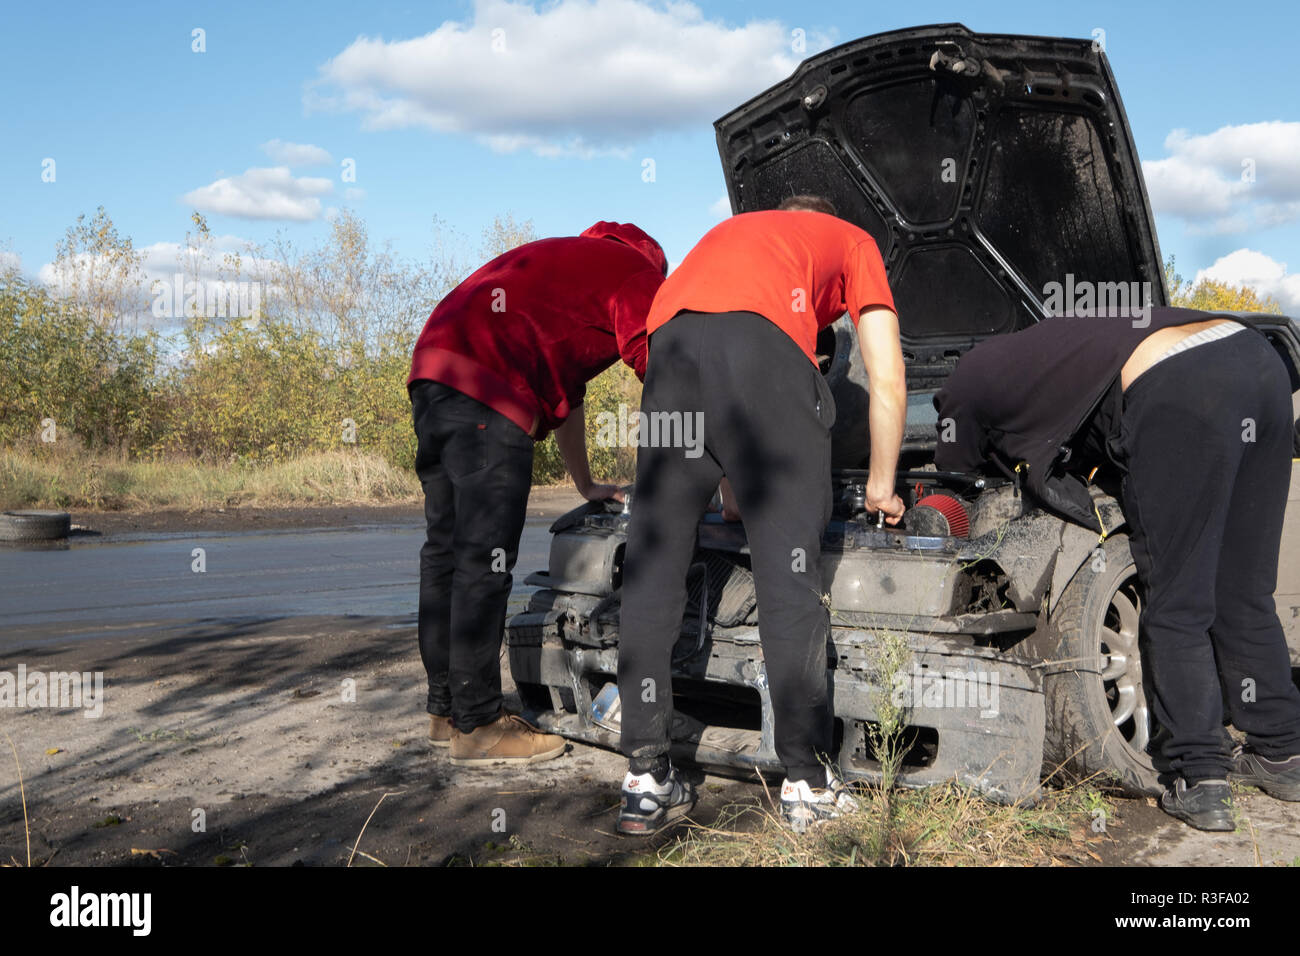 Warschau/Polen - Oktober 21, 2018: 3 Männer reparieren beschädigter Auto während laienhaften treiben Ereignis in Ursus, verlassenen Traktorenfabrik in Warschau Stadtrand. Stockfoto